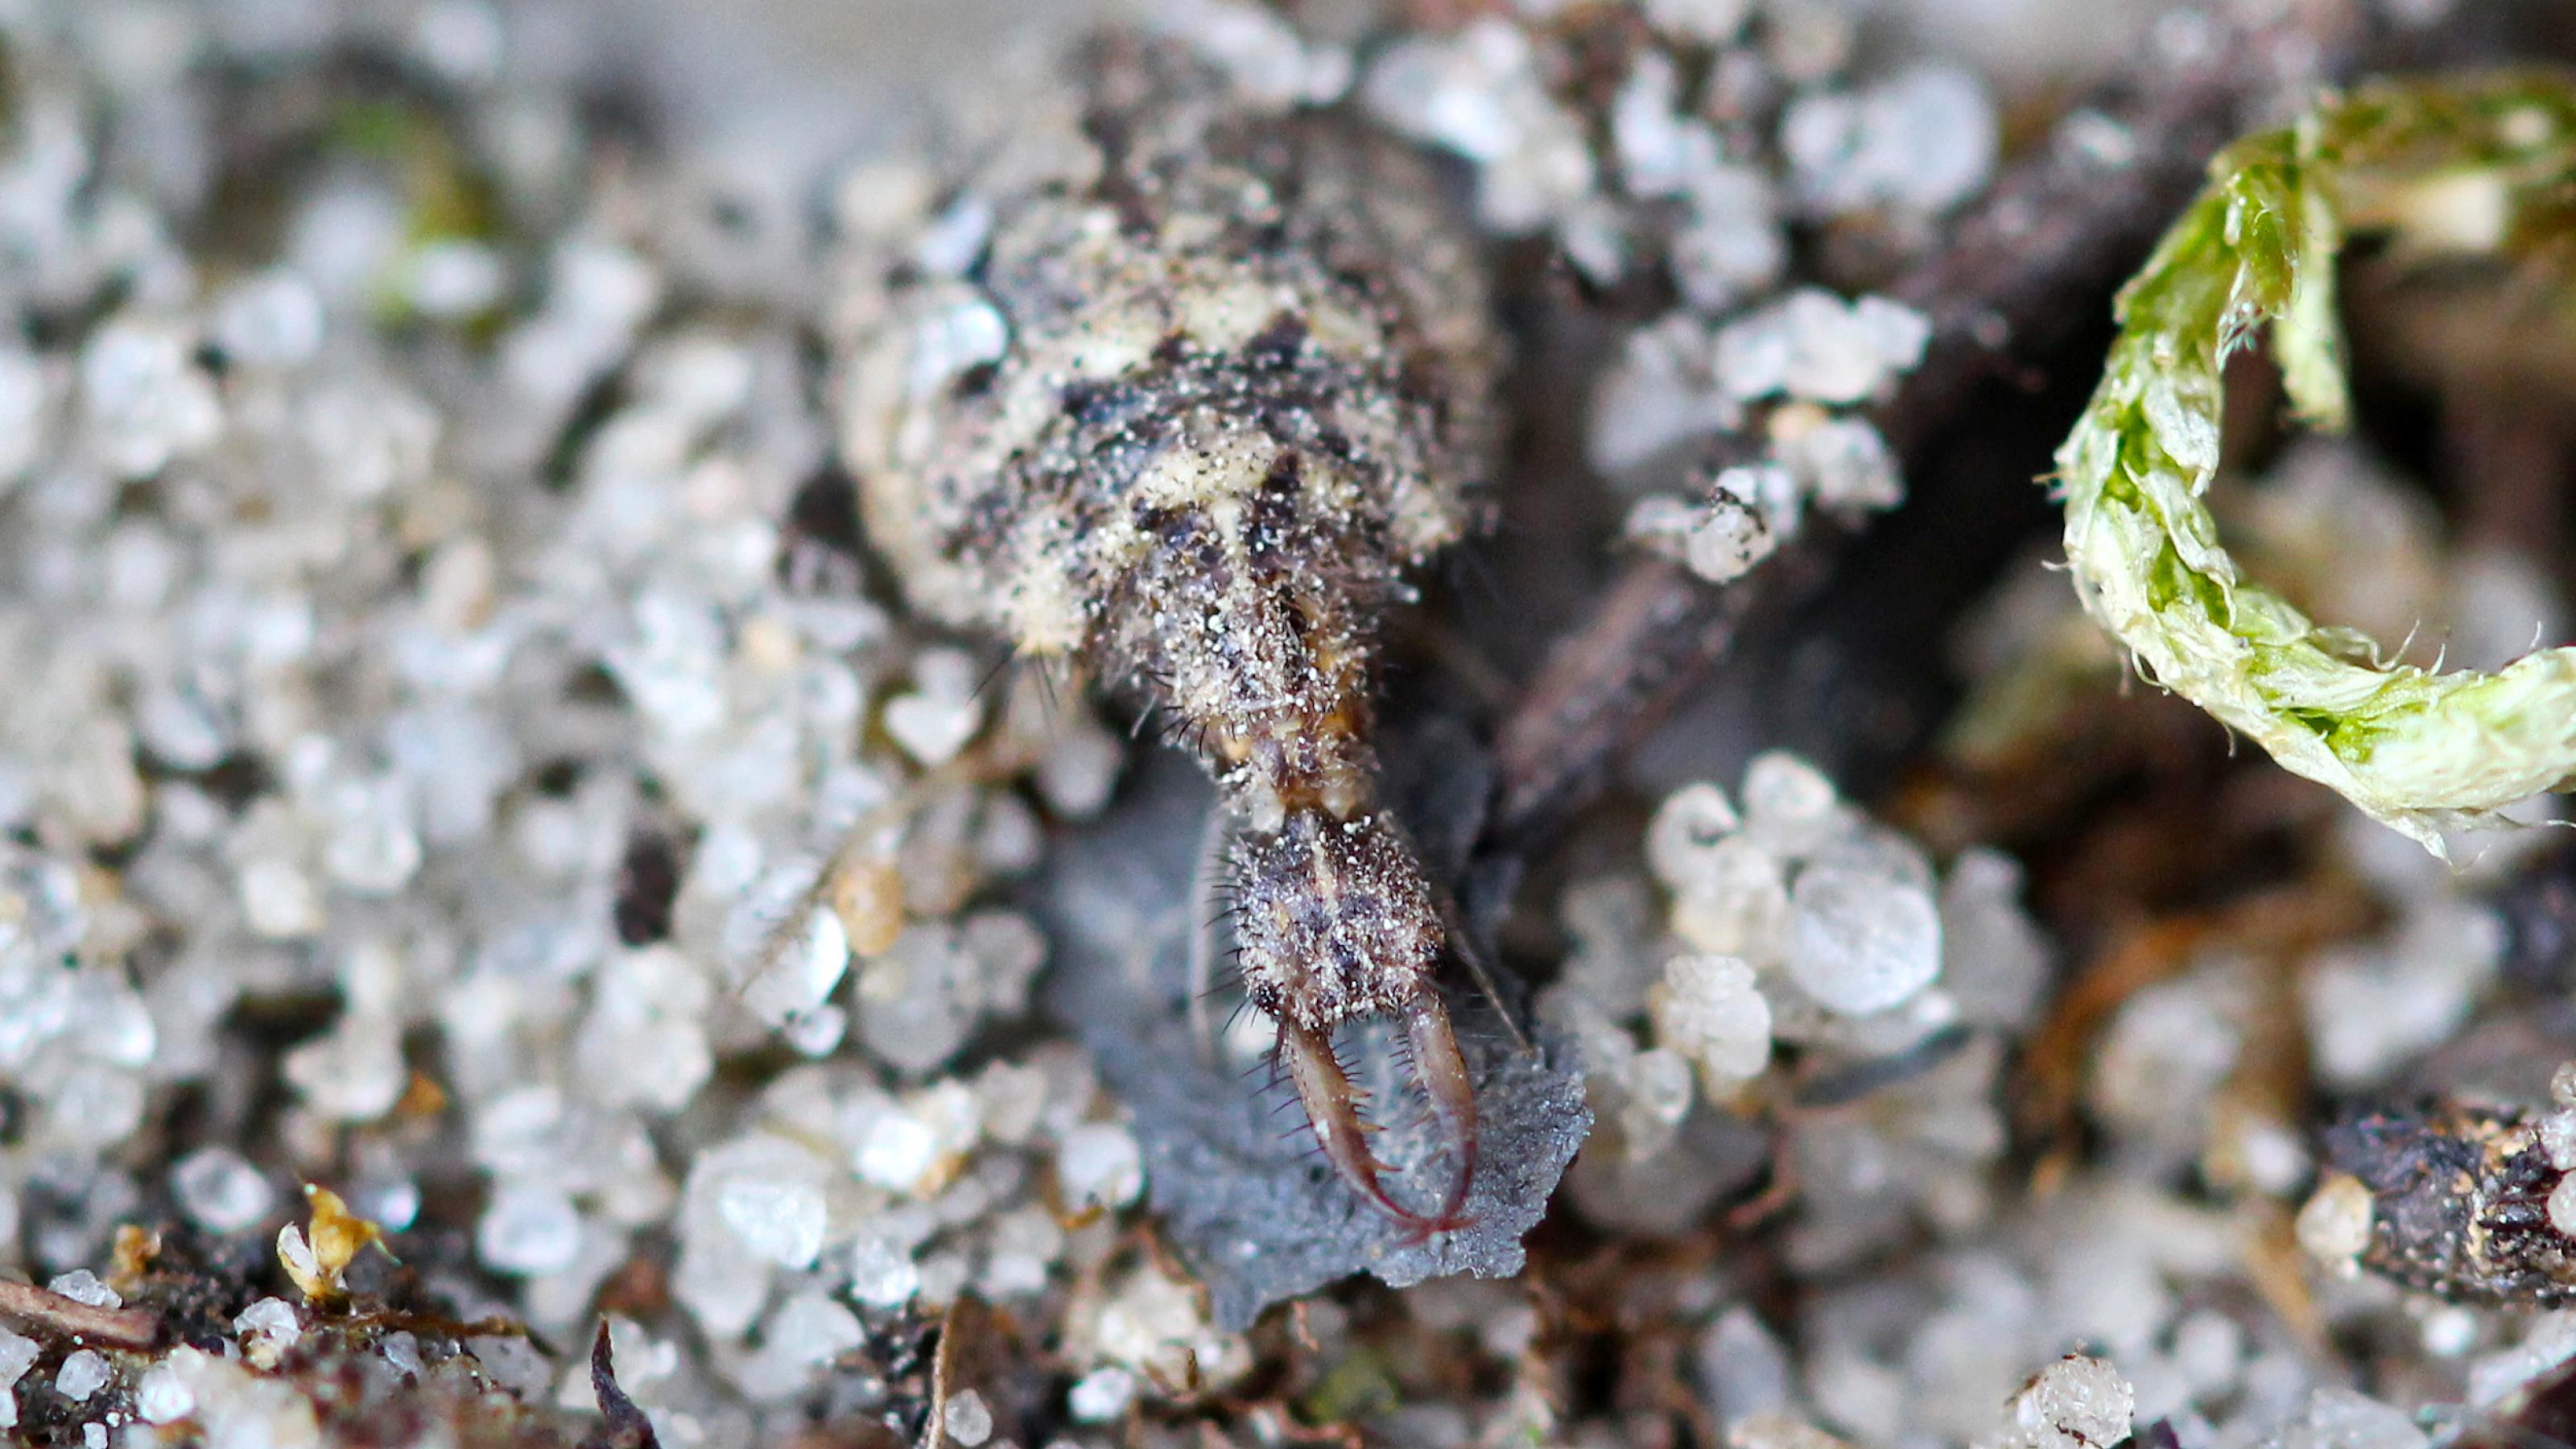 Ein braun-beige gezeichnetes Insekt sitzt im Sand, der kleine Kopf mit den riesigen Greifwerkzeugen schaut nach vorne.